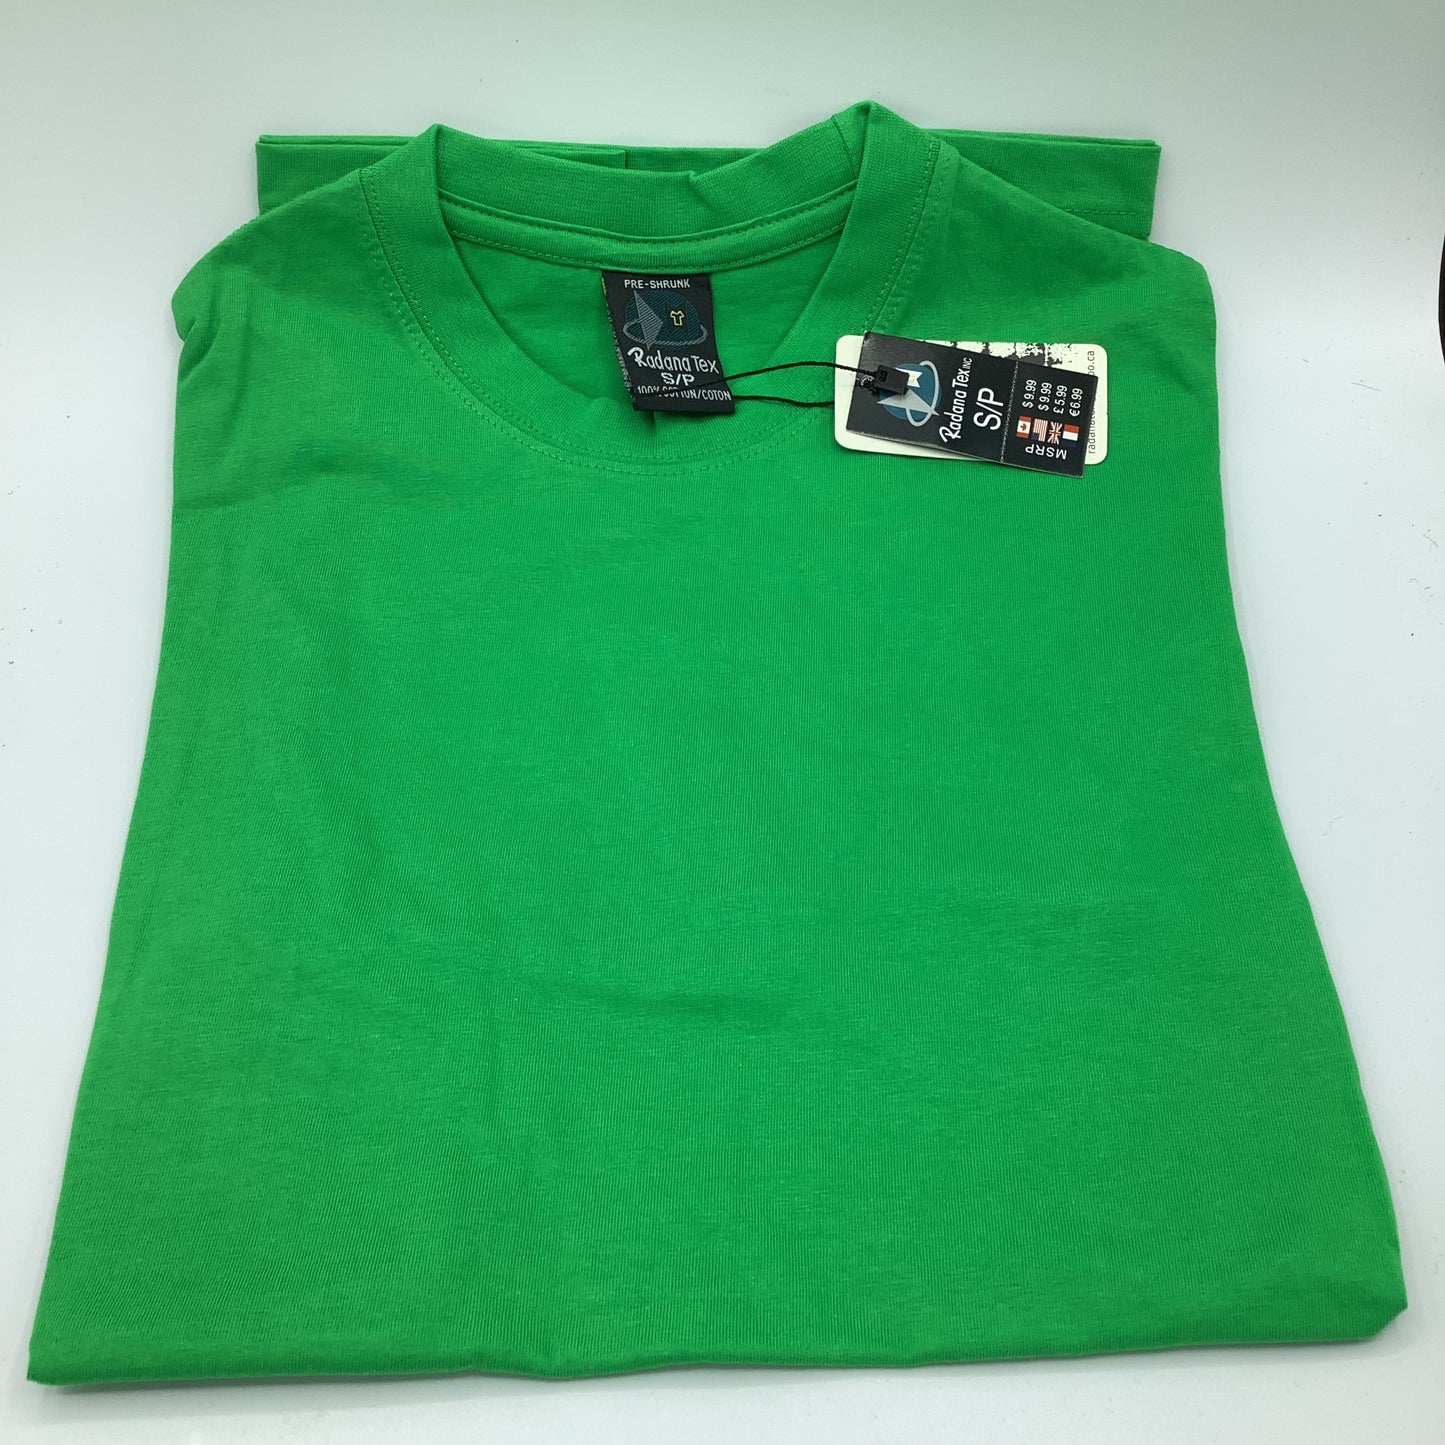 RADANA vert T-shirt